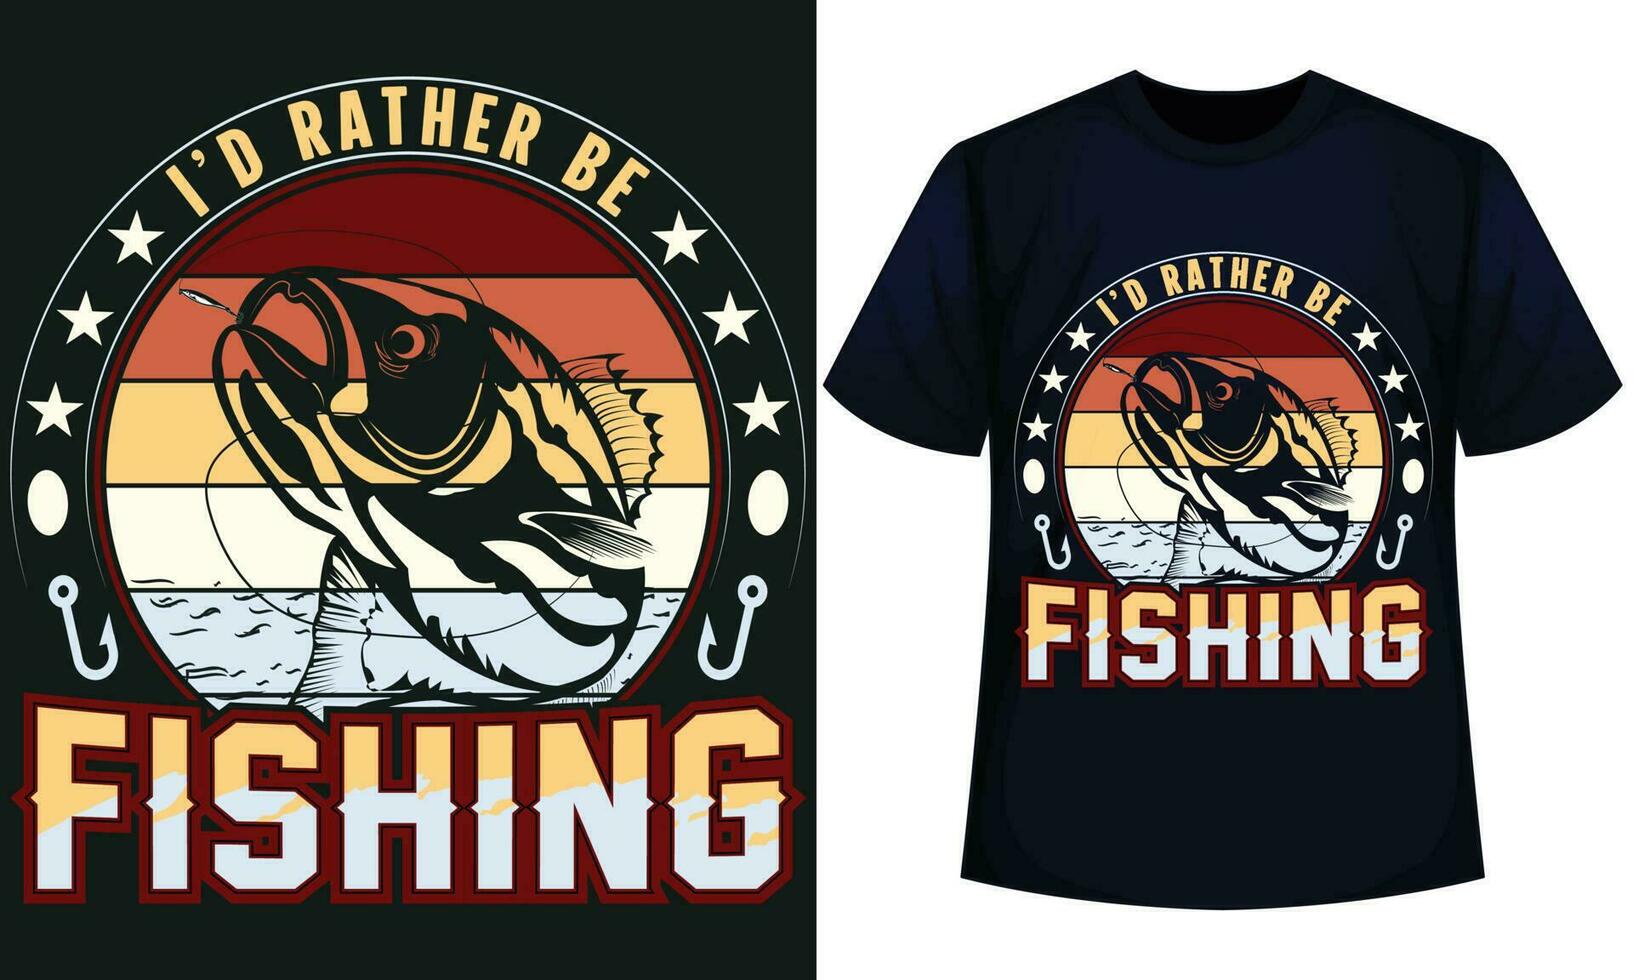 jag d snarare vara fiske. fiske t-shirt design vektor